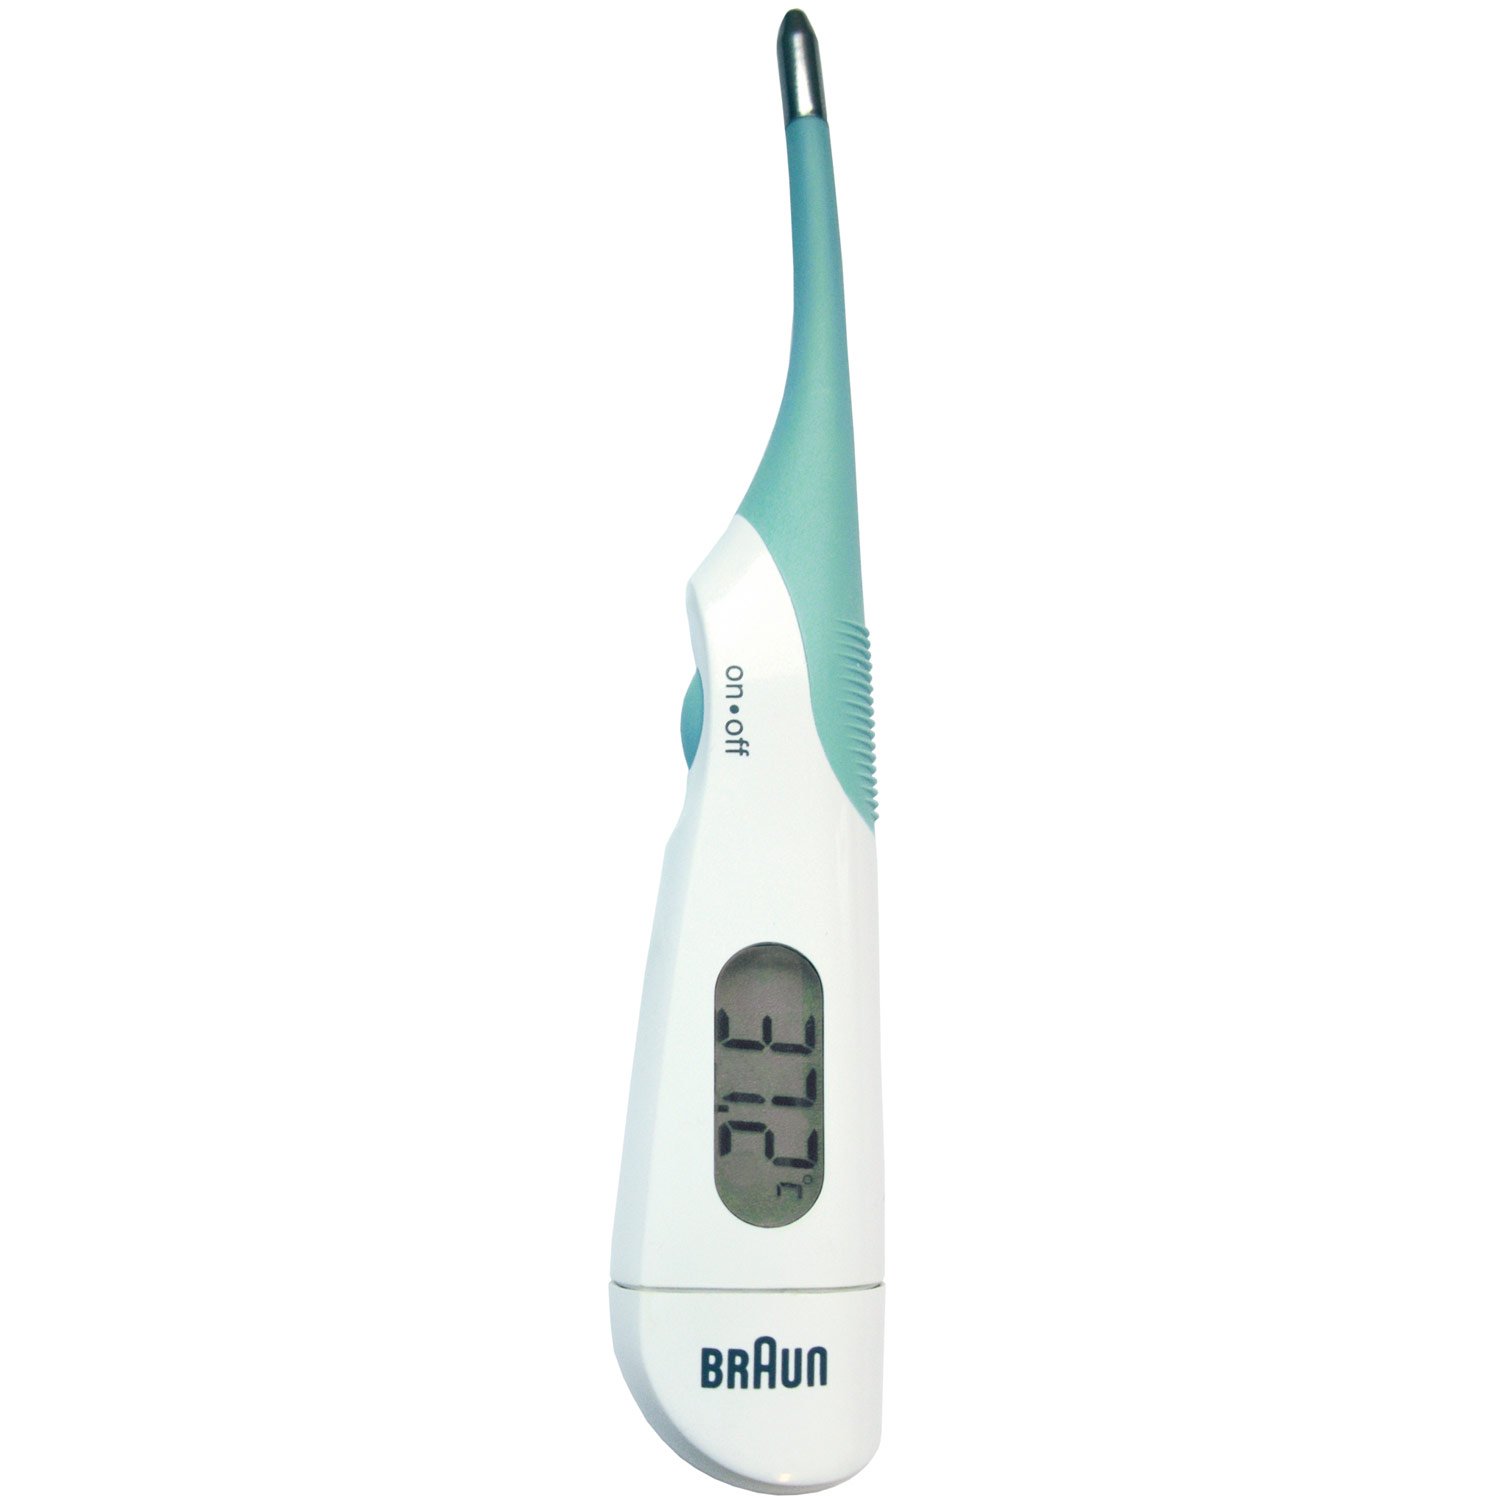 Läs mer om Braun Digital termometer PRT 1000